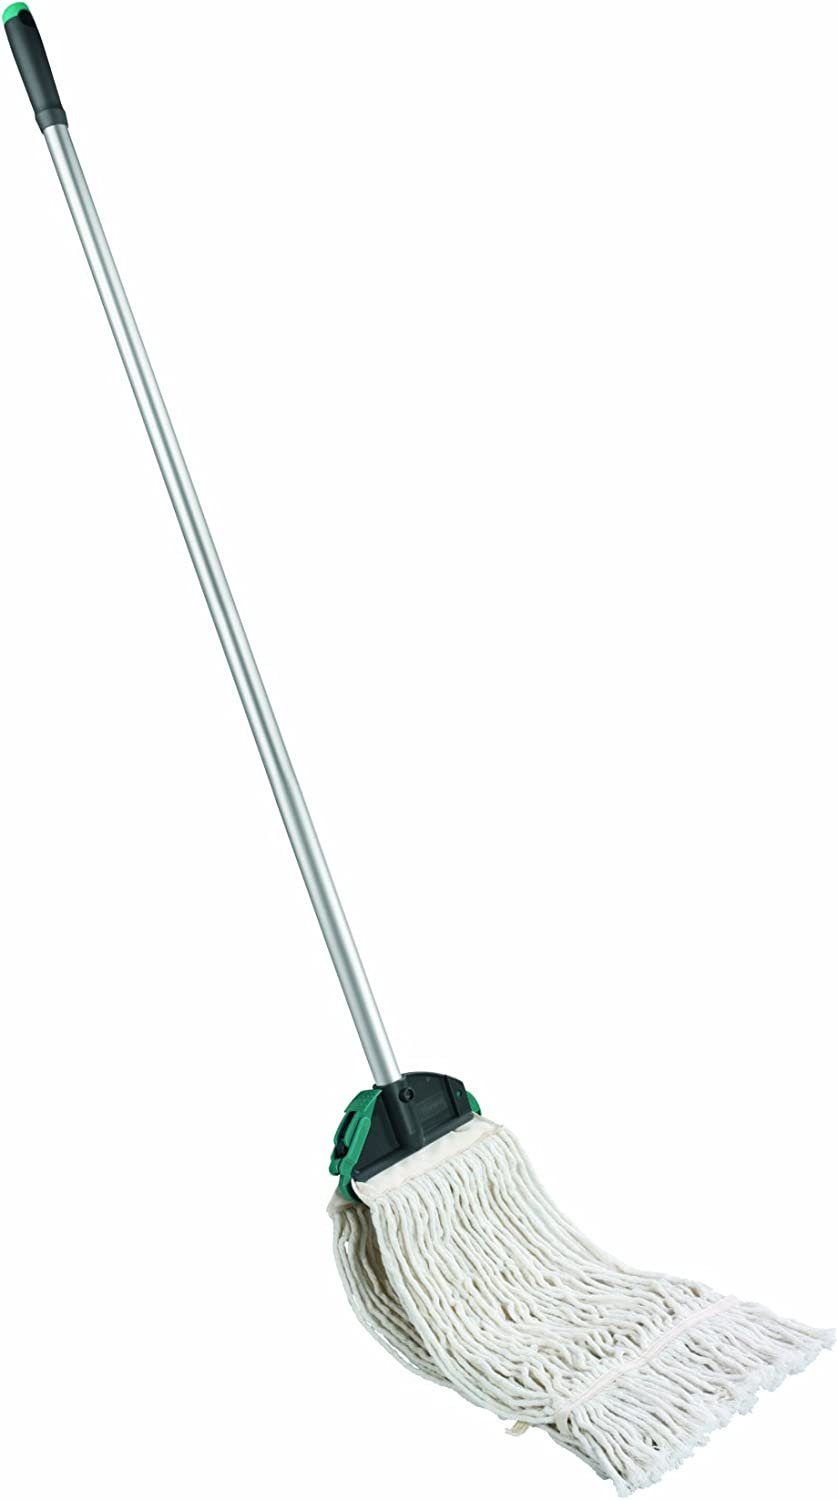 Leifheit Wischmopp Leifheit Professional Mop, Wischer für starke Verschmutzung, mit Aluminiumstiel 140 cm, Bodenwischer mit saugfähiger